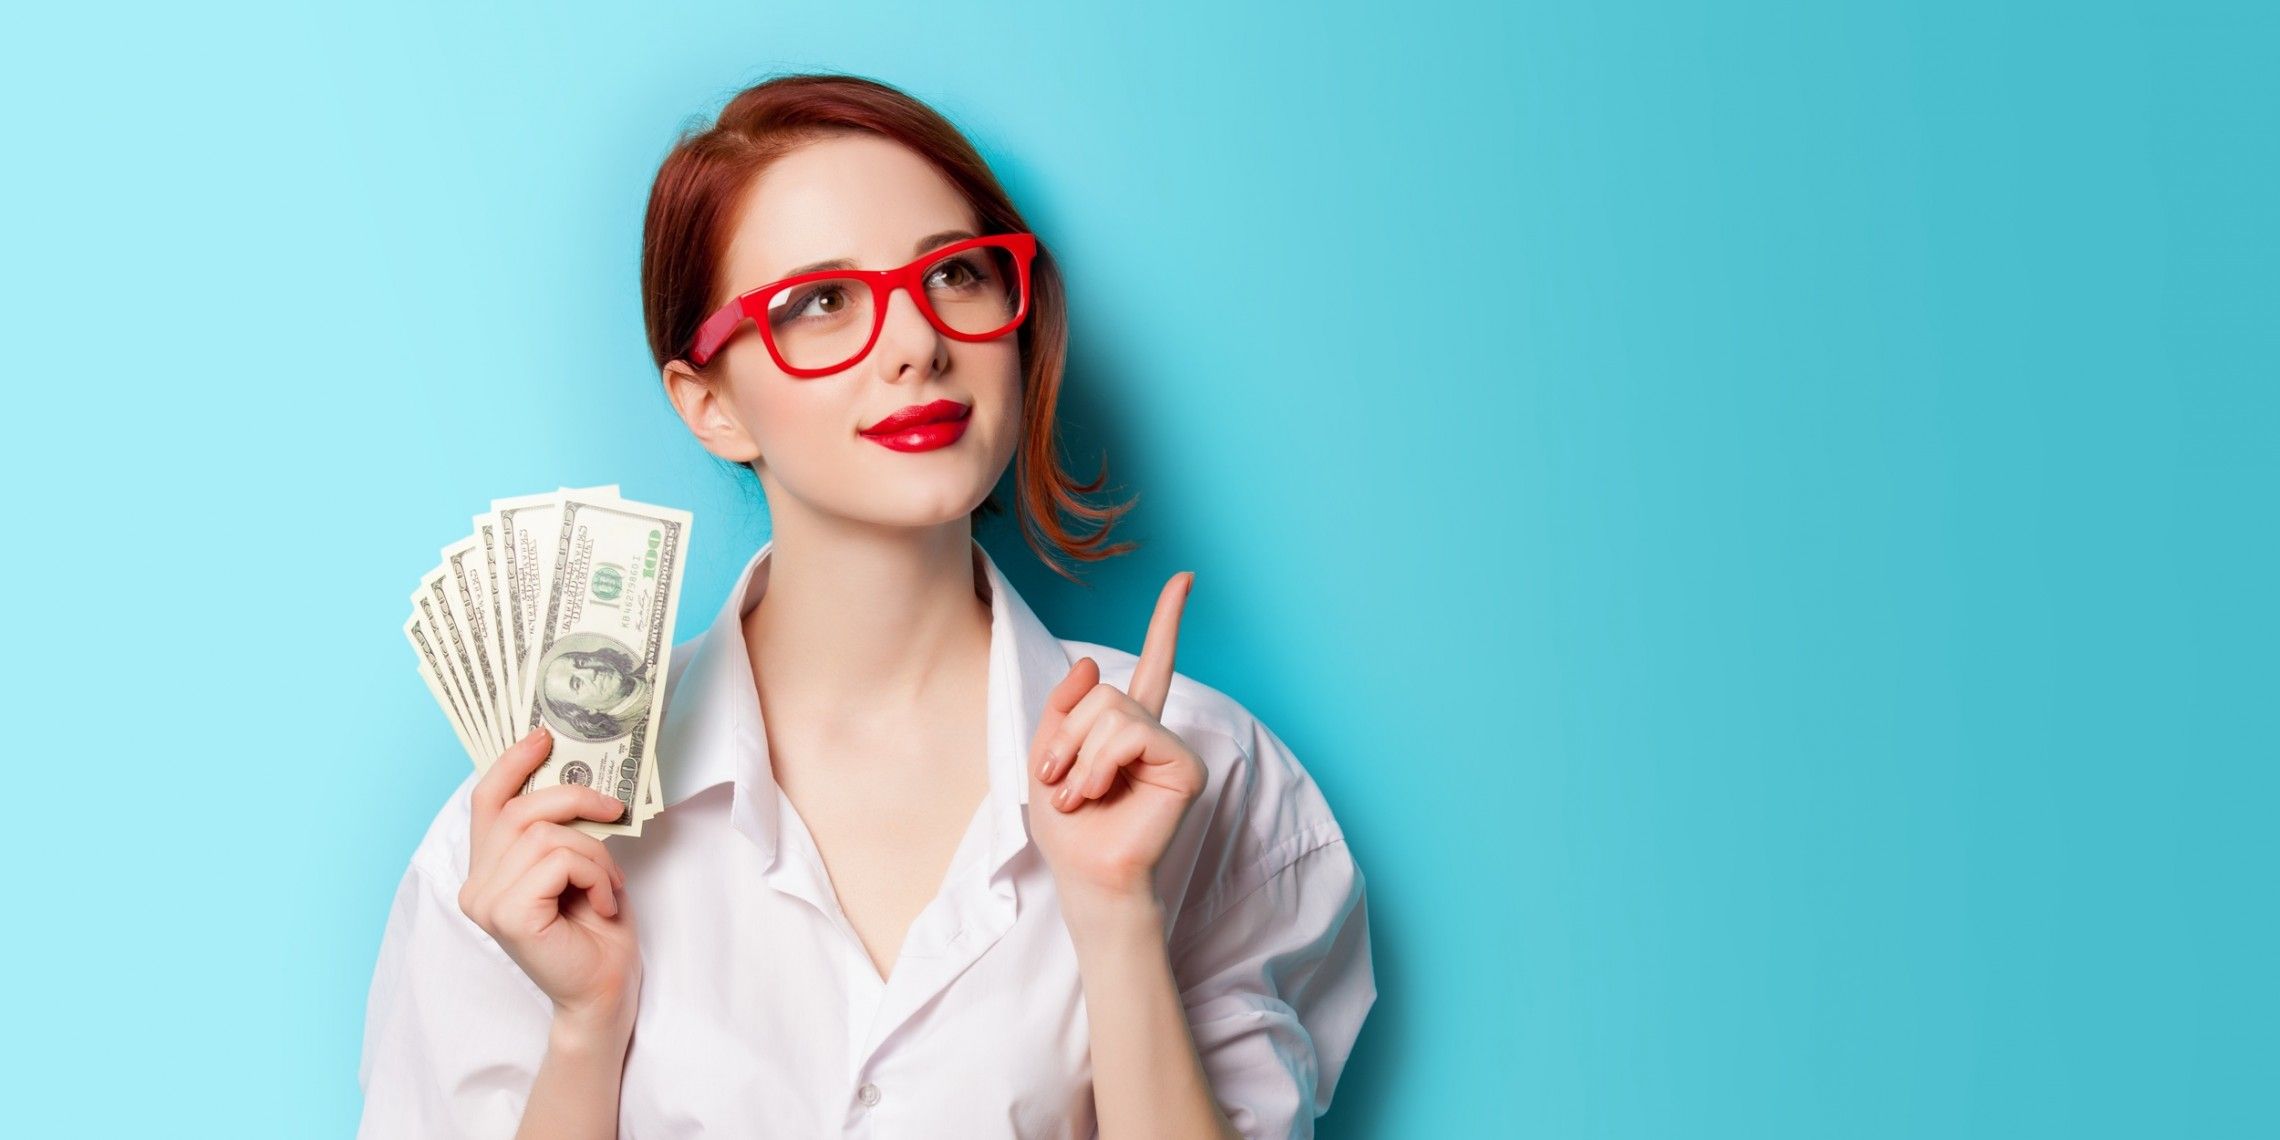 Эксперты в обращении с финансами: 5 знаков зодиака, которые умеют управлять деньгами